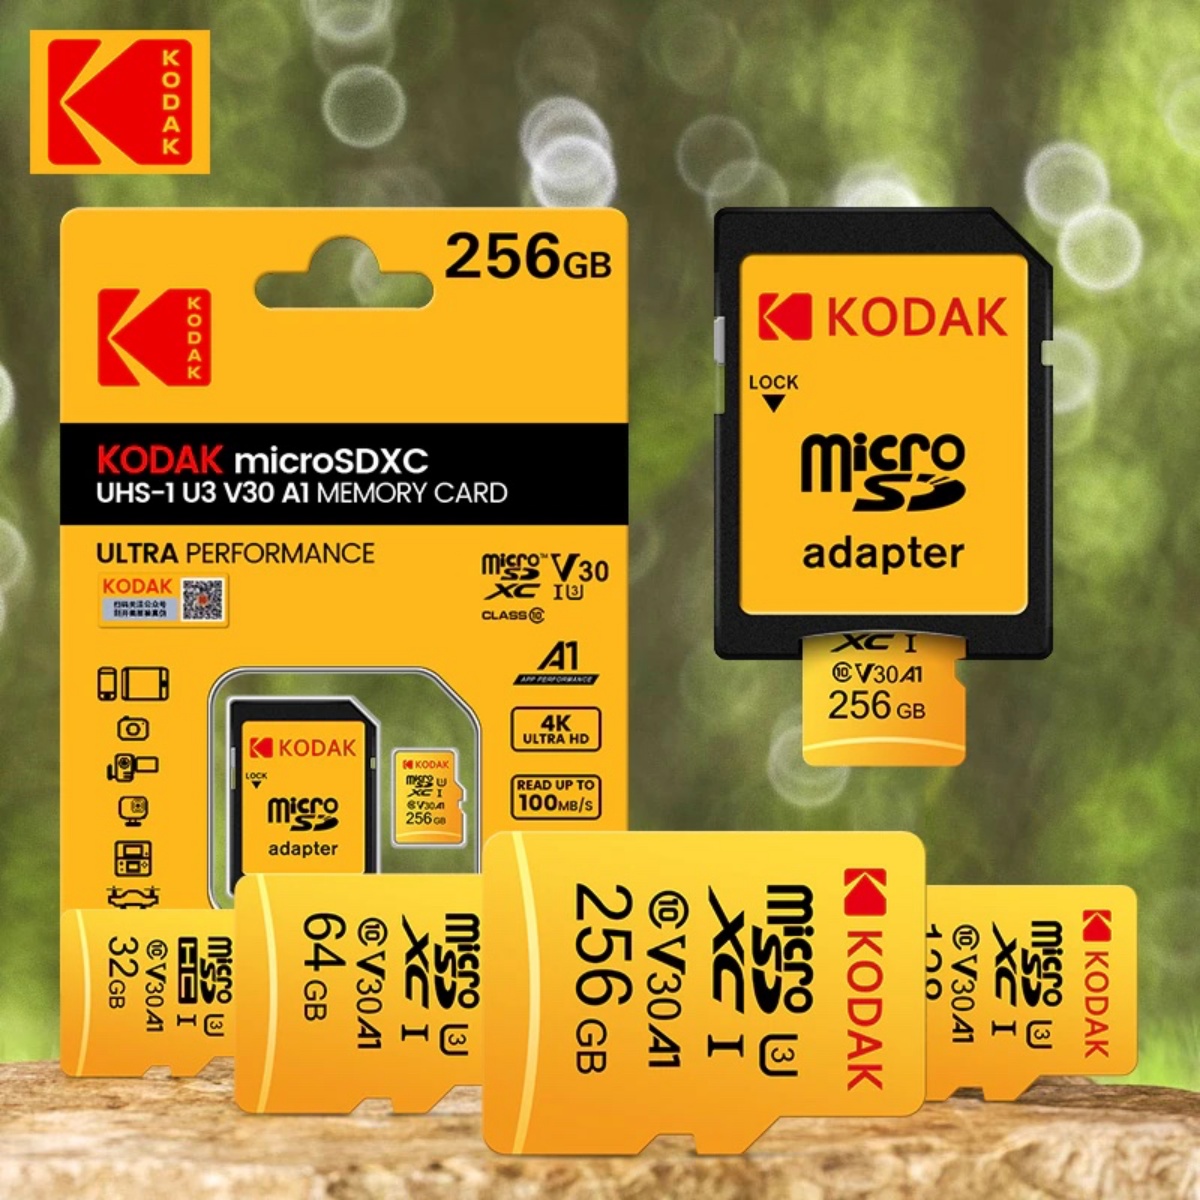 Kodak PIXPRO FZ45 Digital Camera 32GB Memory Card Nepal